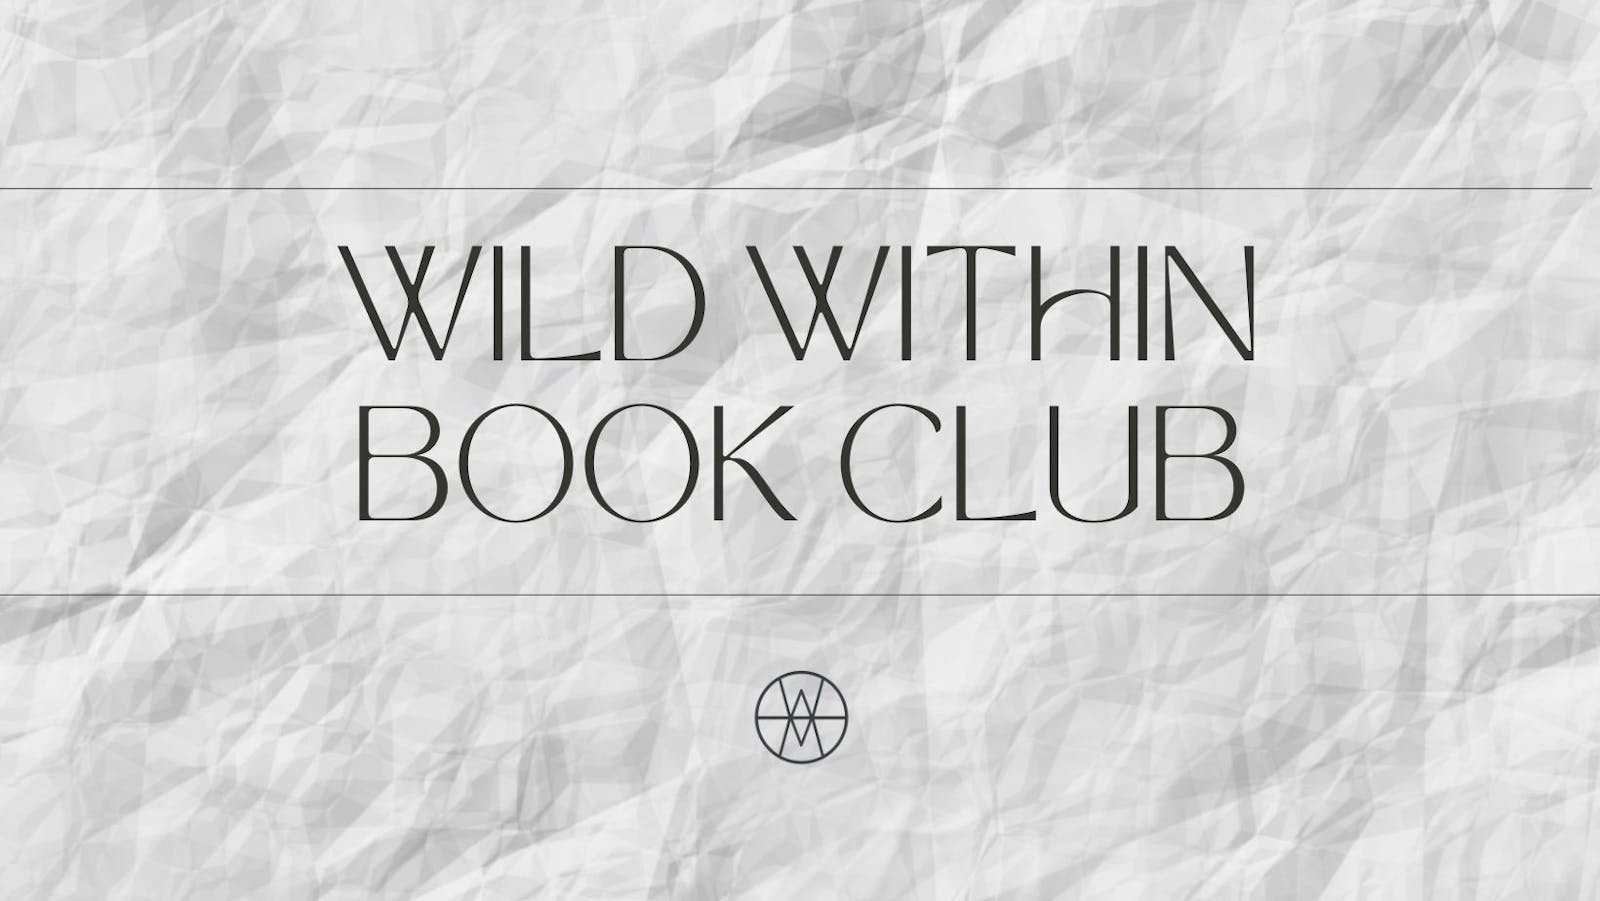 April Book Club with Alasdair